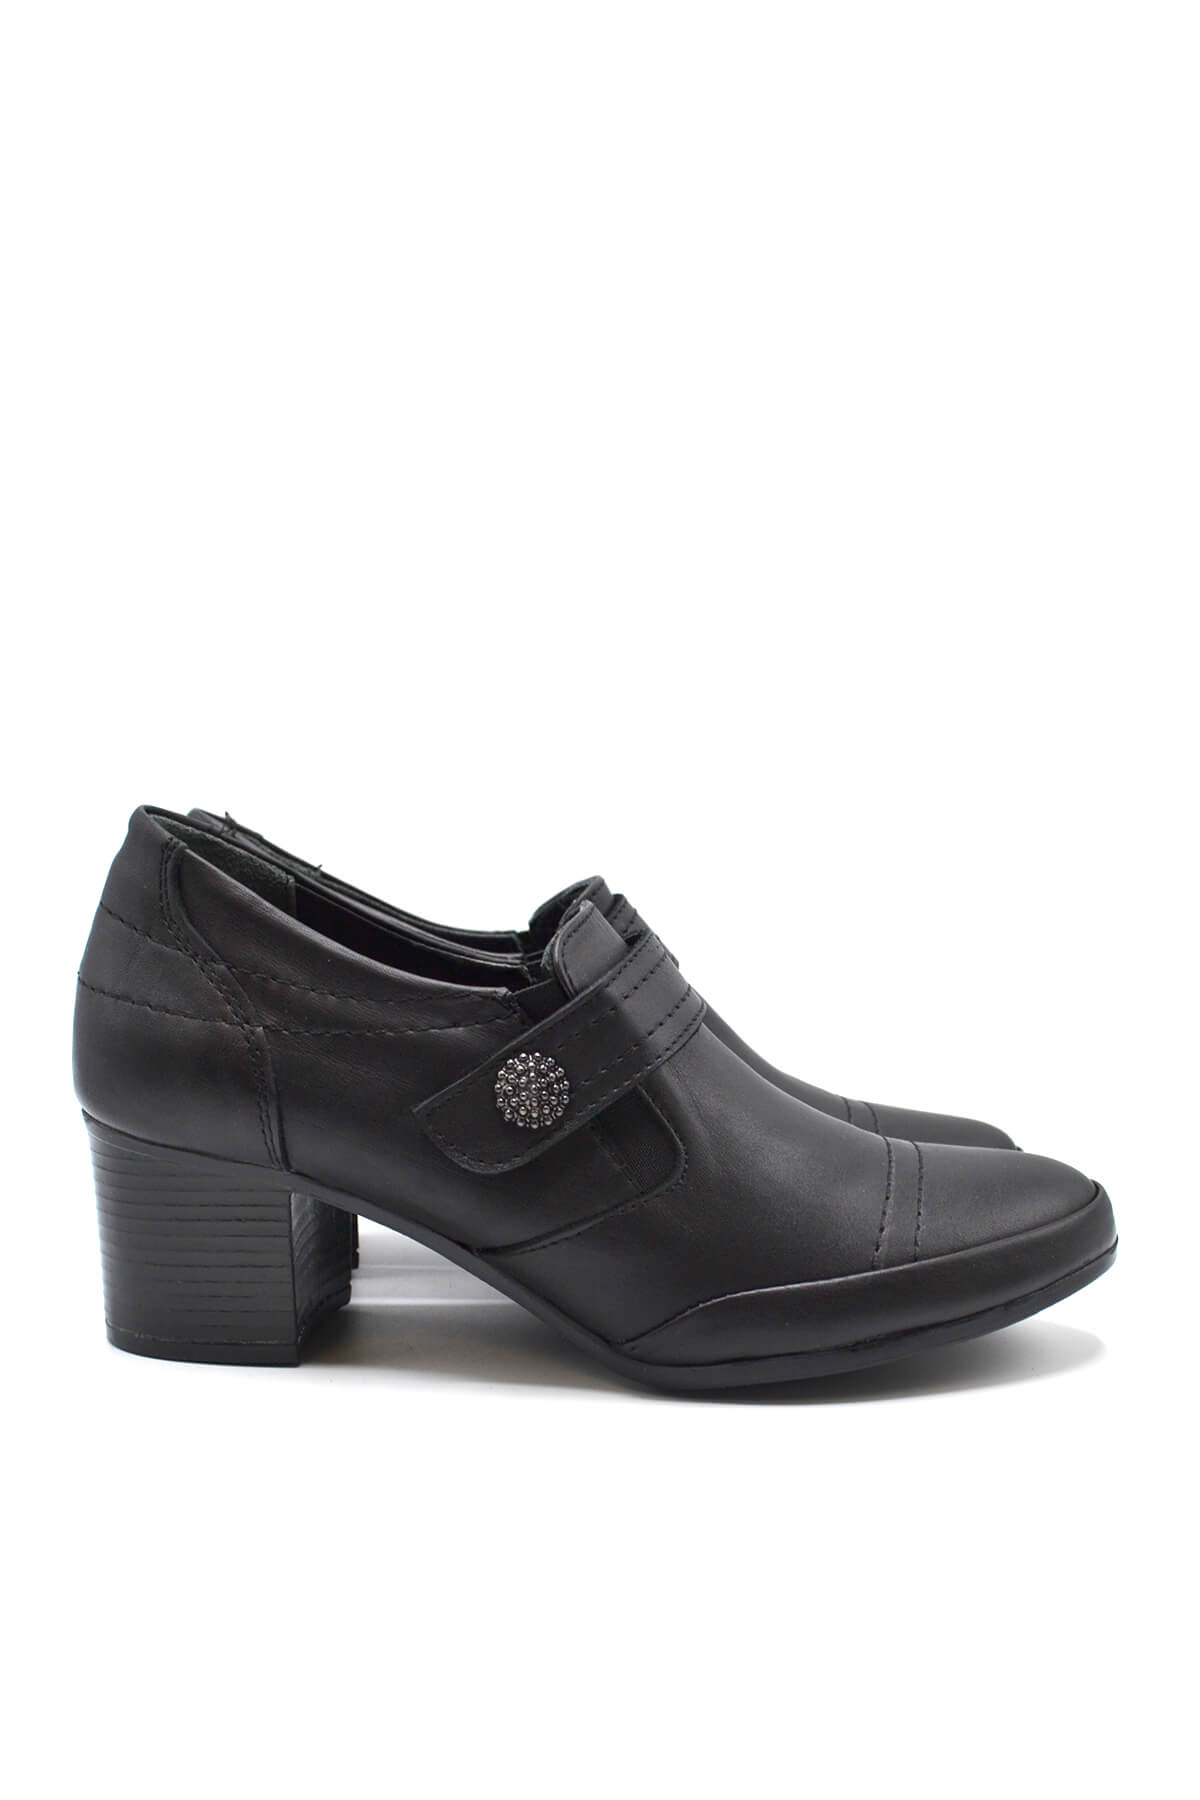 Kadın Topuklu Ayakkabı Siyah 1911961K - Thumbnail